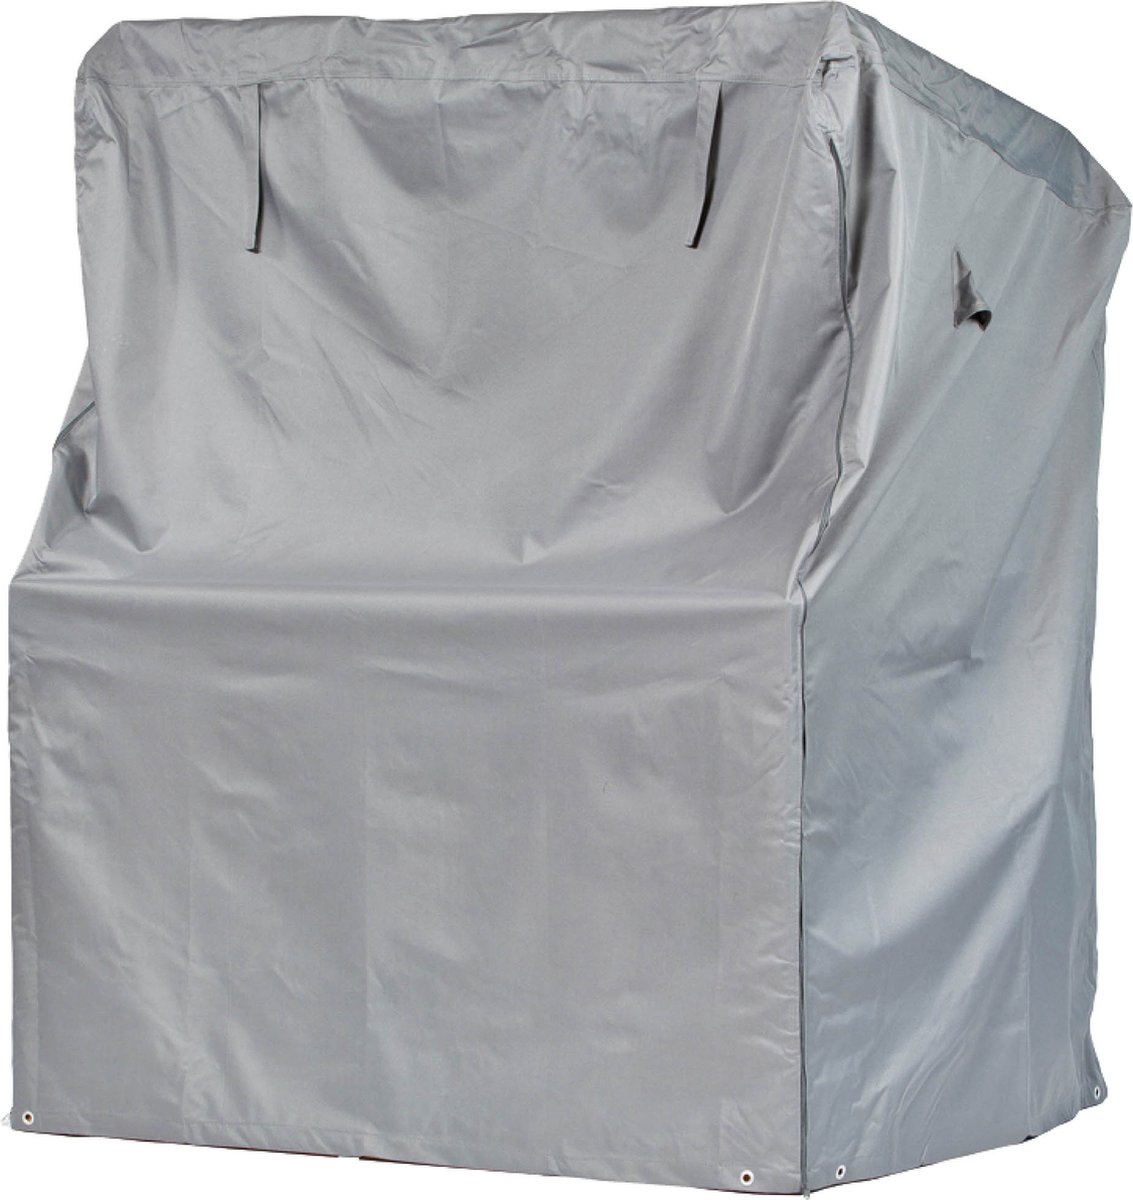 Beschermhoes voor strandstoel | 150 x 100 x 165/140 cm | polyesterweefsel van het type Oxford 600D, kleur: grijs.